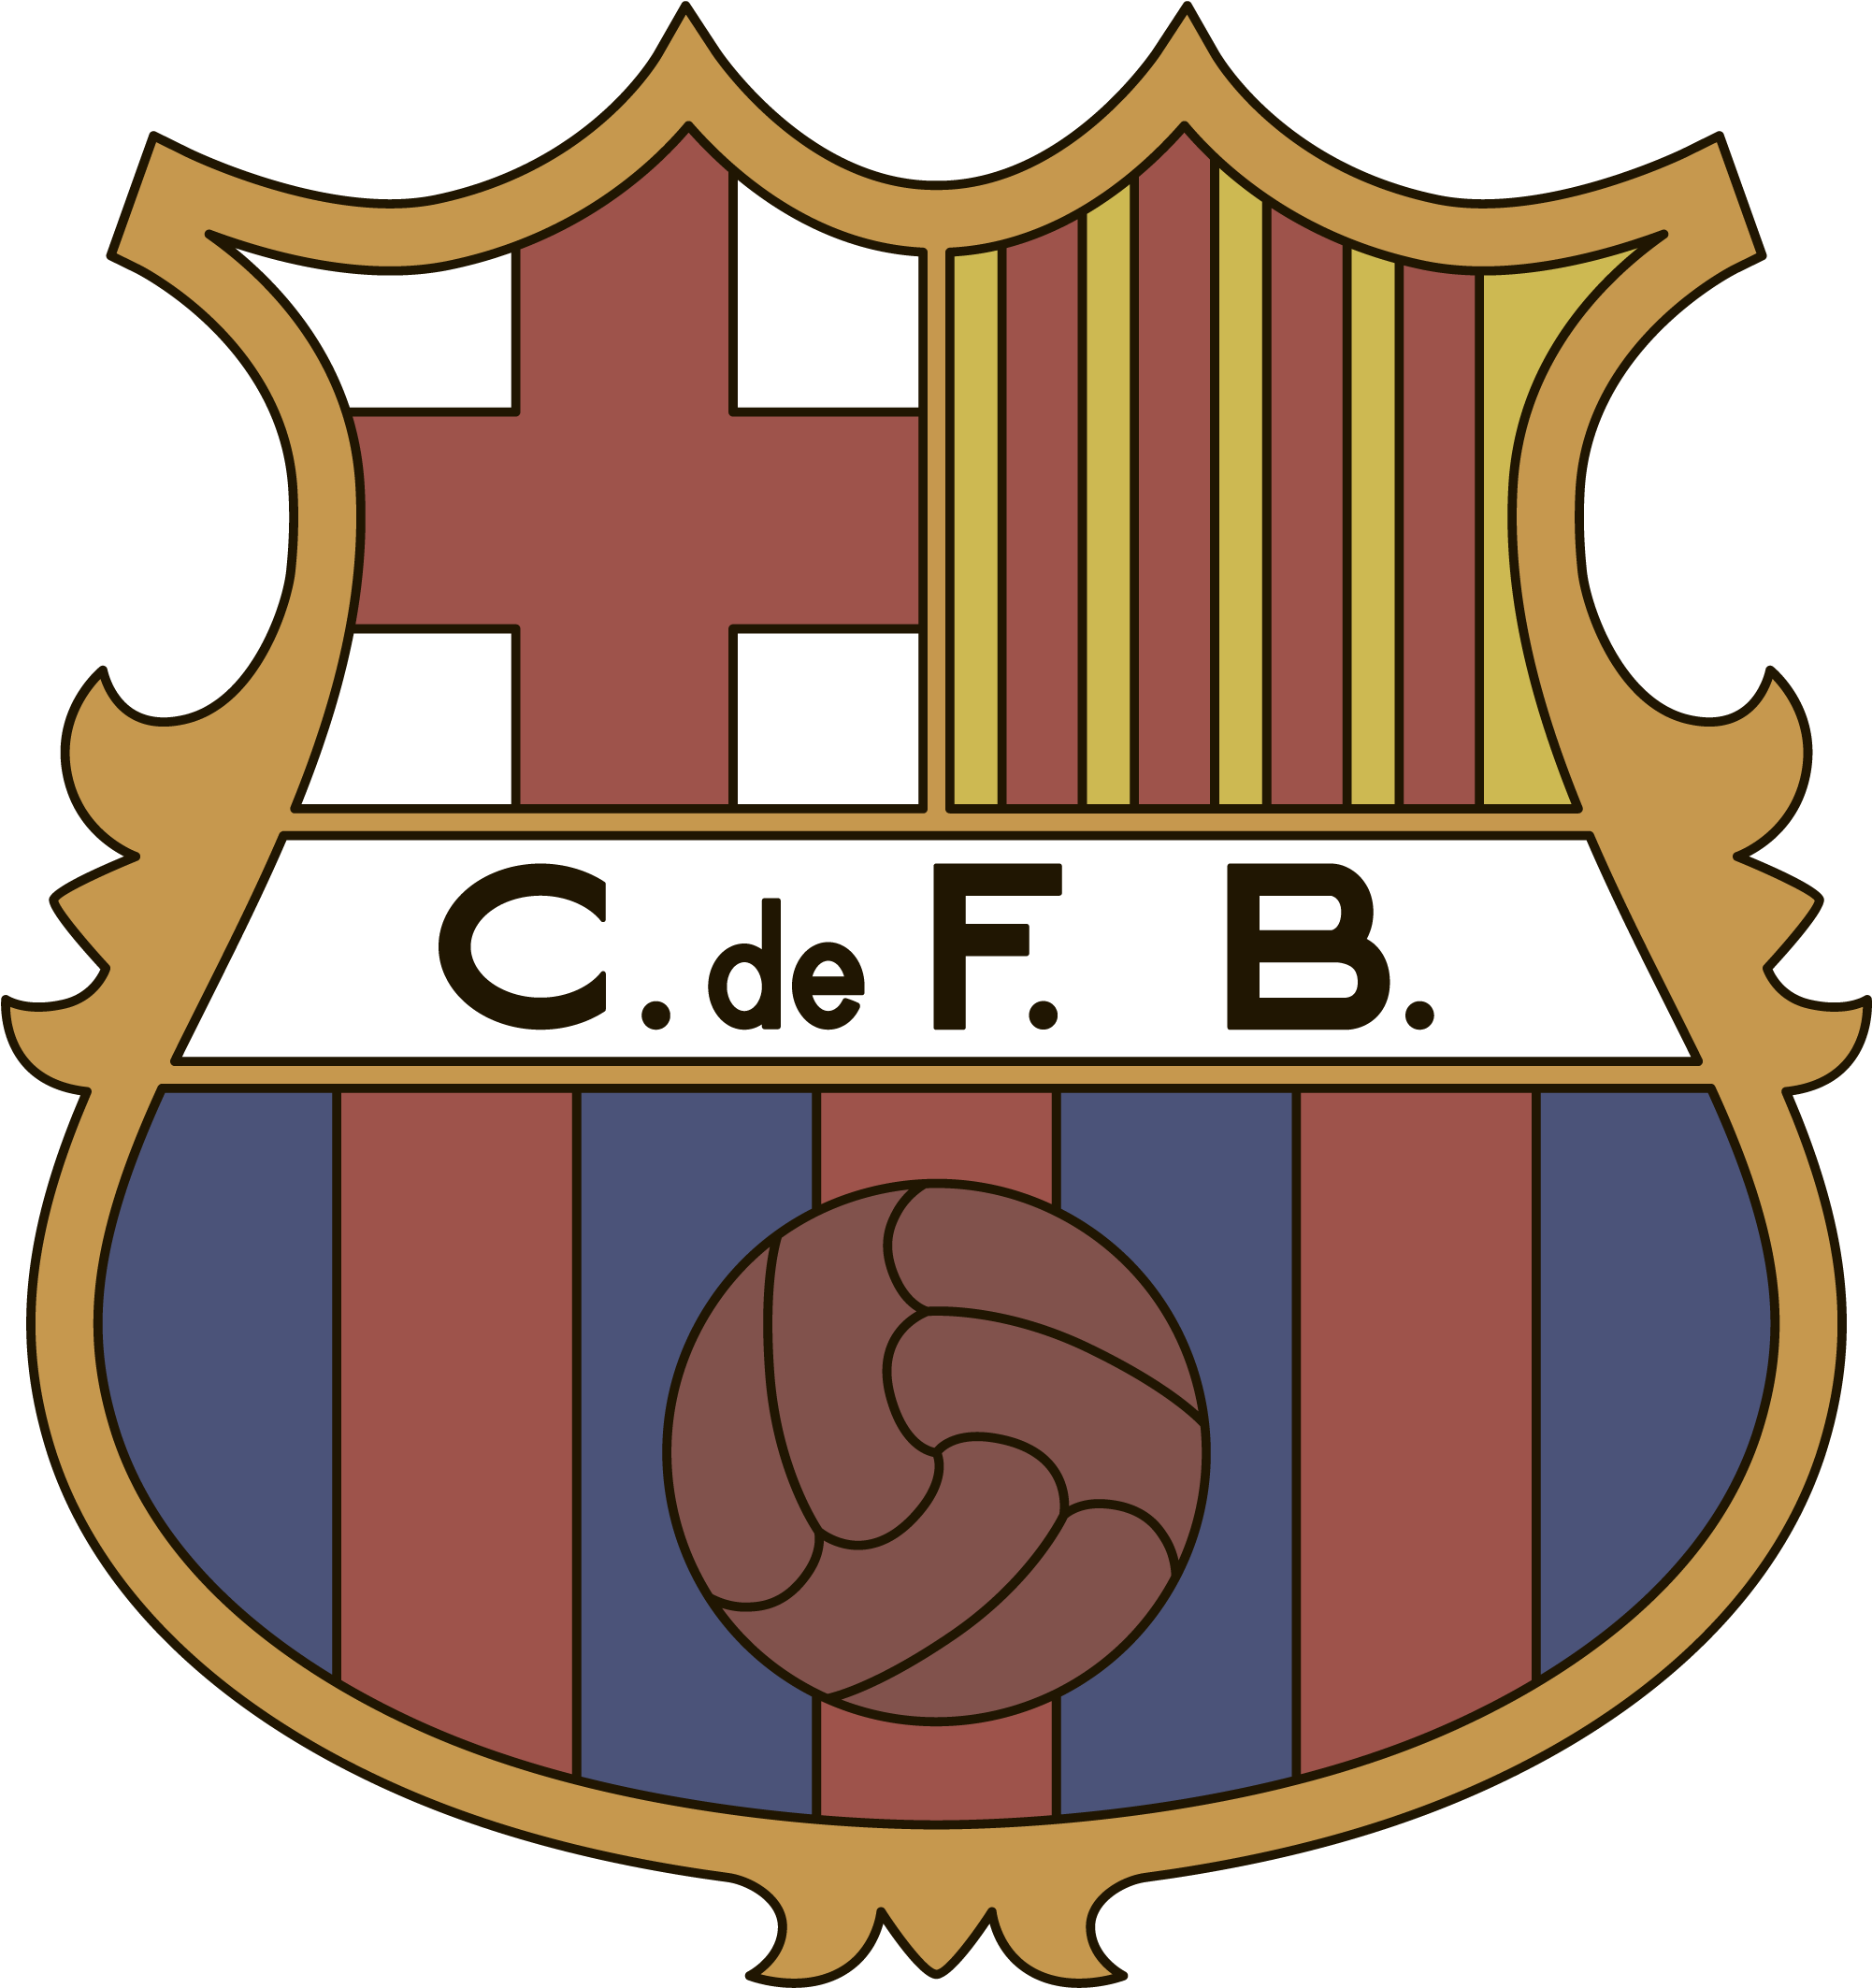 F de s. Барселона футбольный клуб эмблема. Герб ФК Барселона. ФК Барселона лого. Барселона эмблема 2021.